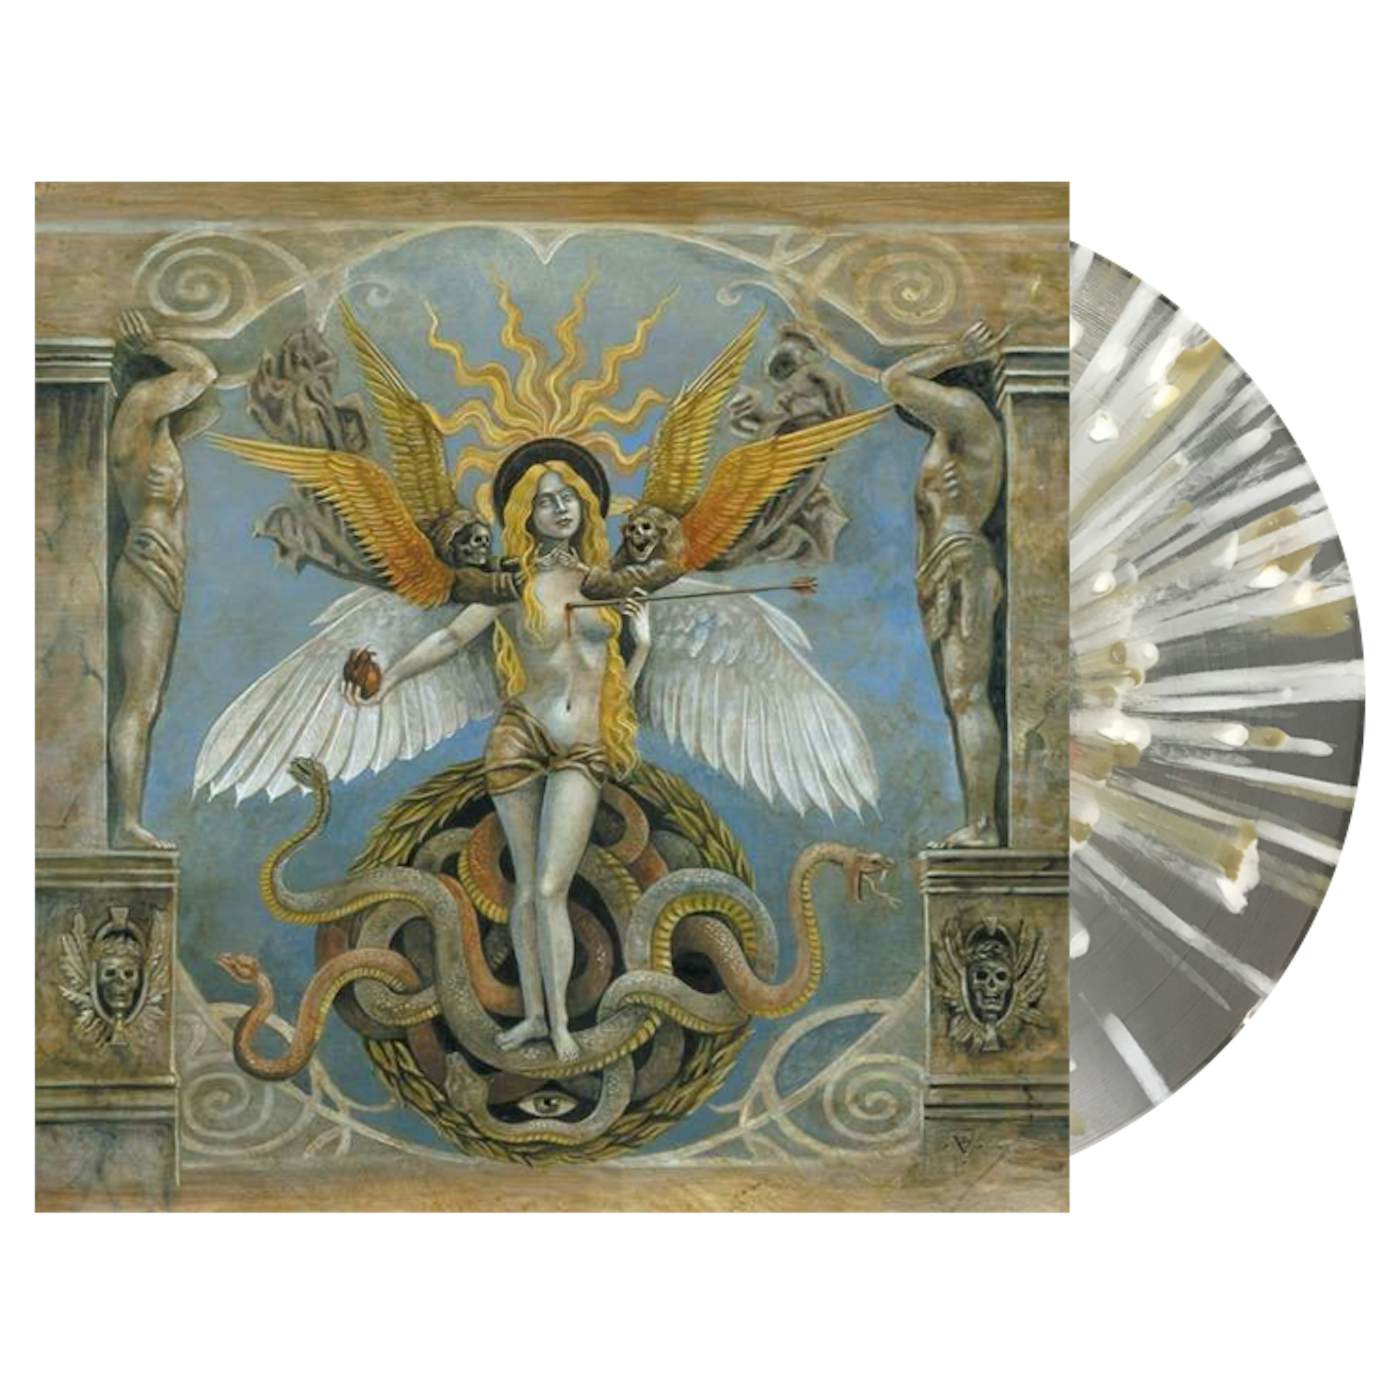 AOSOTH - 'V: The Inside Scriptures' LP (Transparent Splatter) (Vinyl)